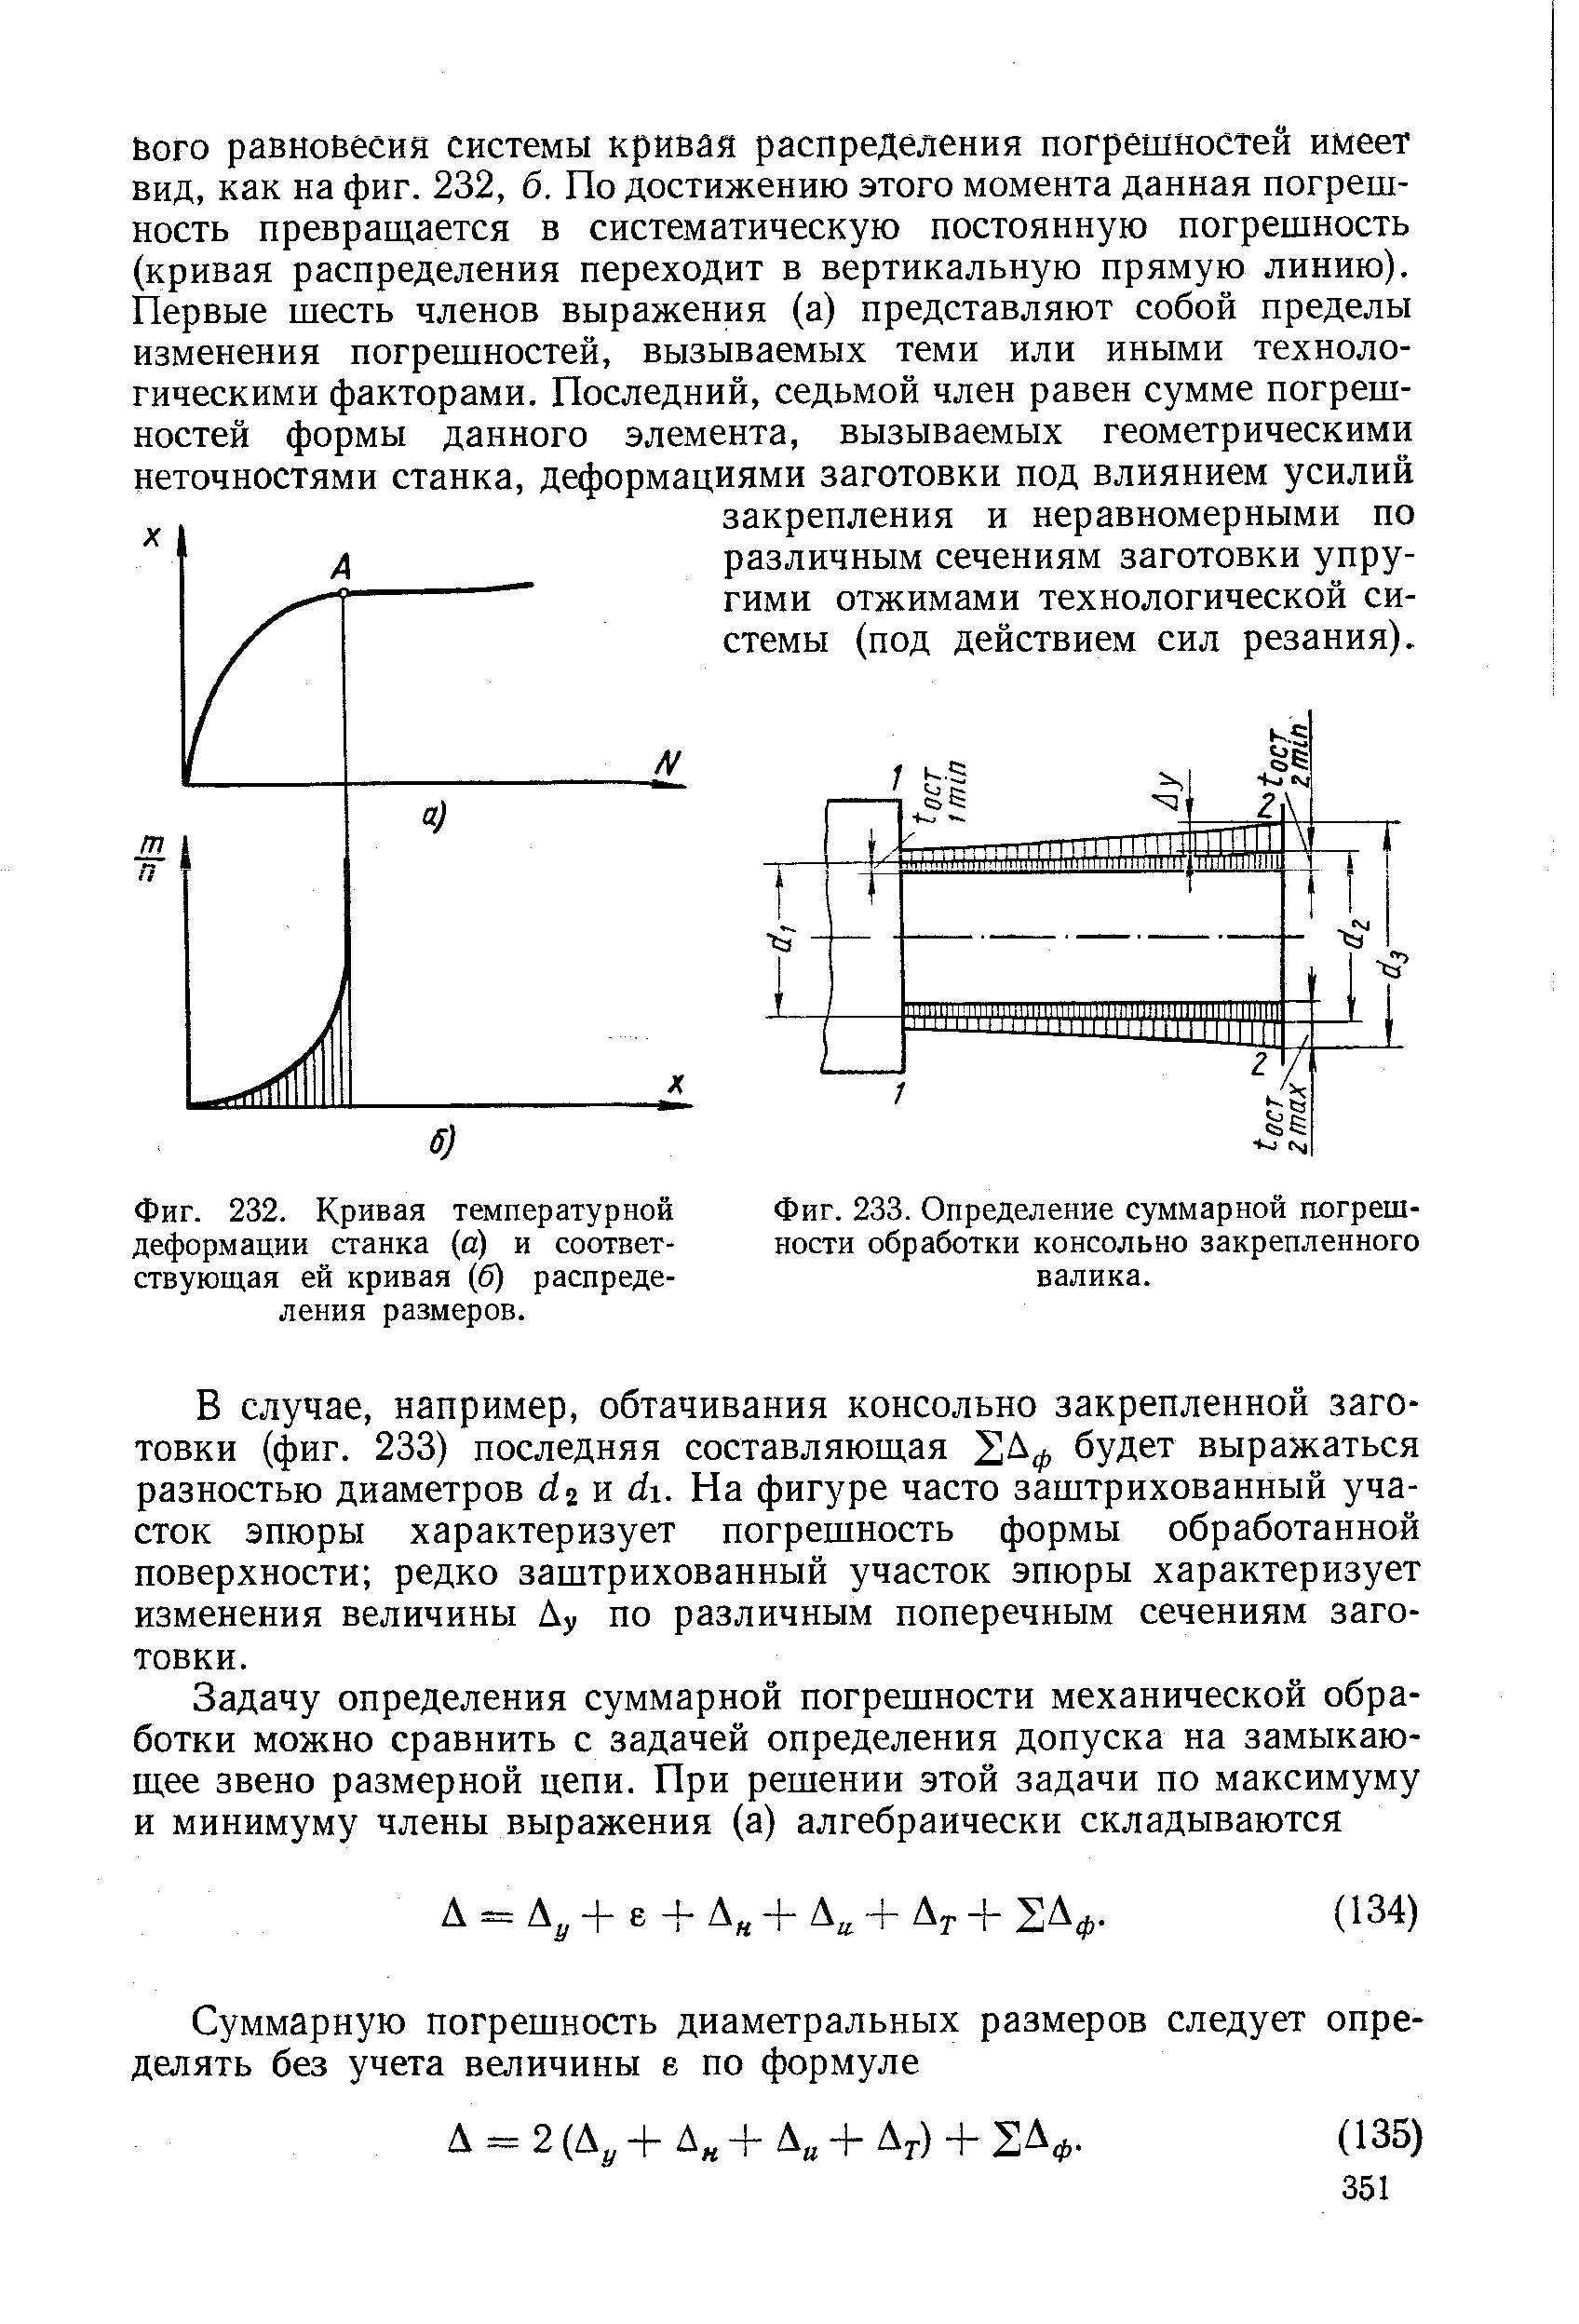 Фиг. 232. Кривая температурной деформации станка (а) и соответствующая ей кривая (б) распределения размеров.
